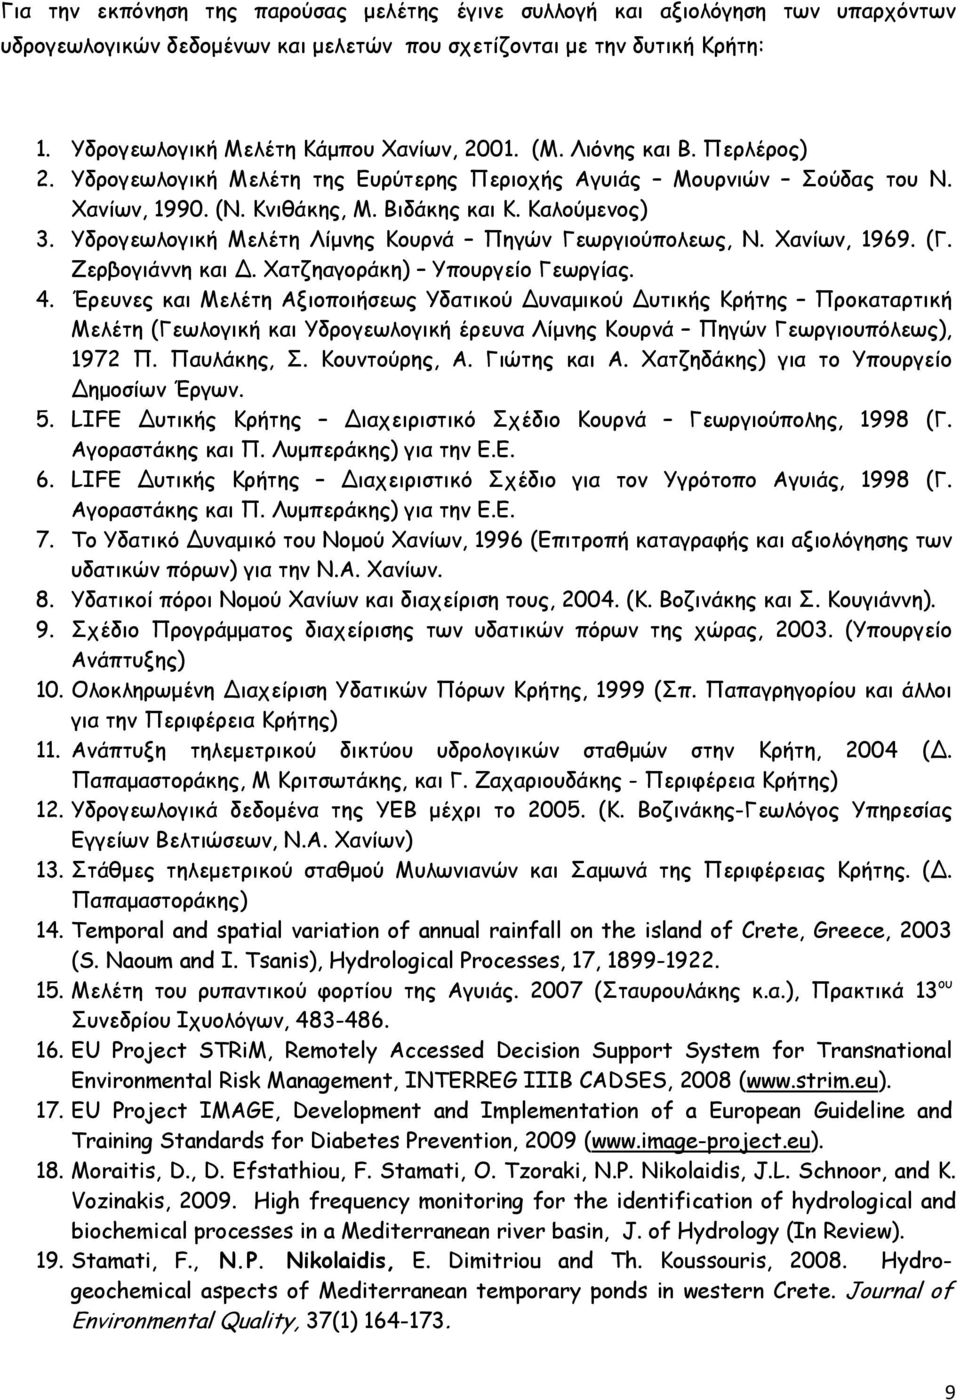 Υδρογεωλογική Μελέτη Λίμνης Κουρνά Πηγών Γεωργιούπολεως, Ν. Χανίων, 1969. (Γ. Ζερβογιάννη και Δ. Χατζηαγοράκη) Υπουργείο Γεωργίας. 4.